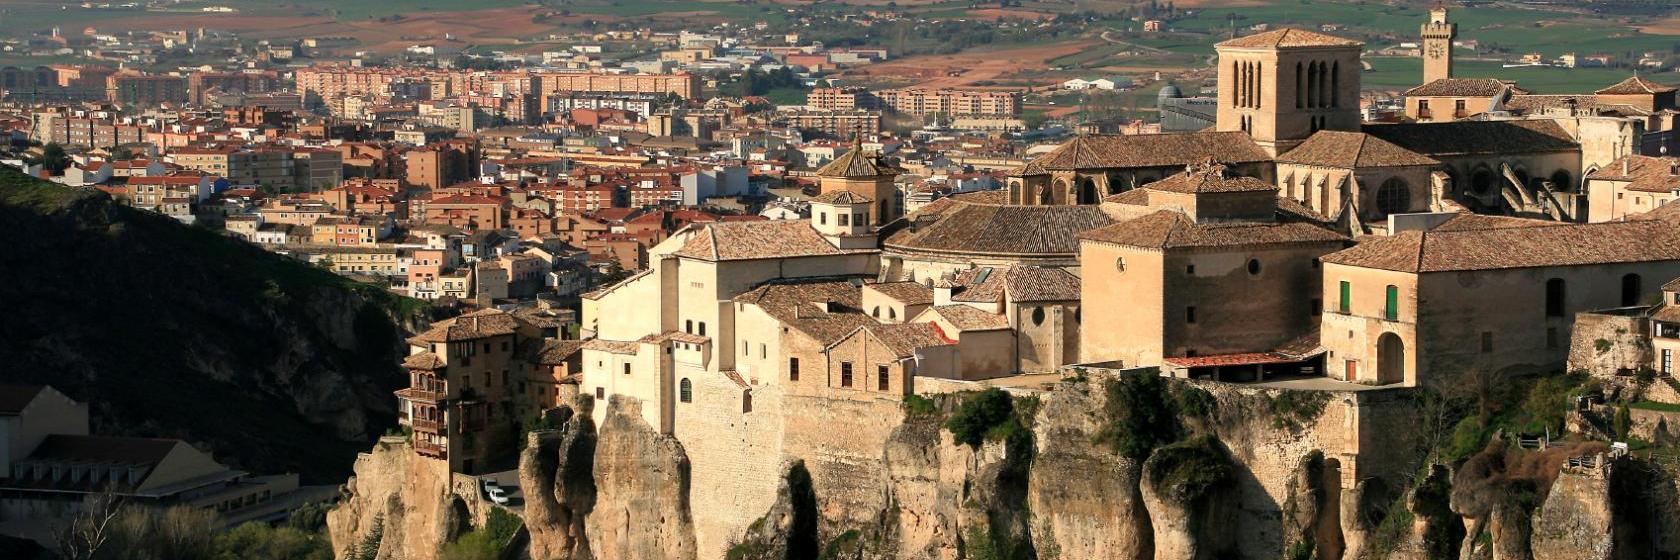 graduado erupción cuota de matrícula Los 10 mejores hoteles de Cuenca (desde € 40)